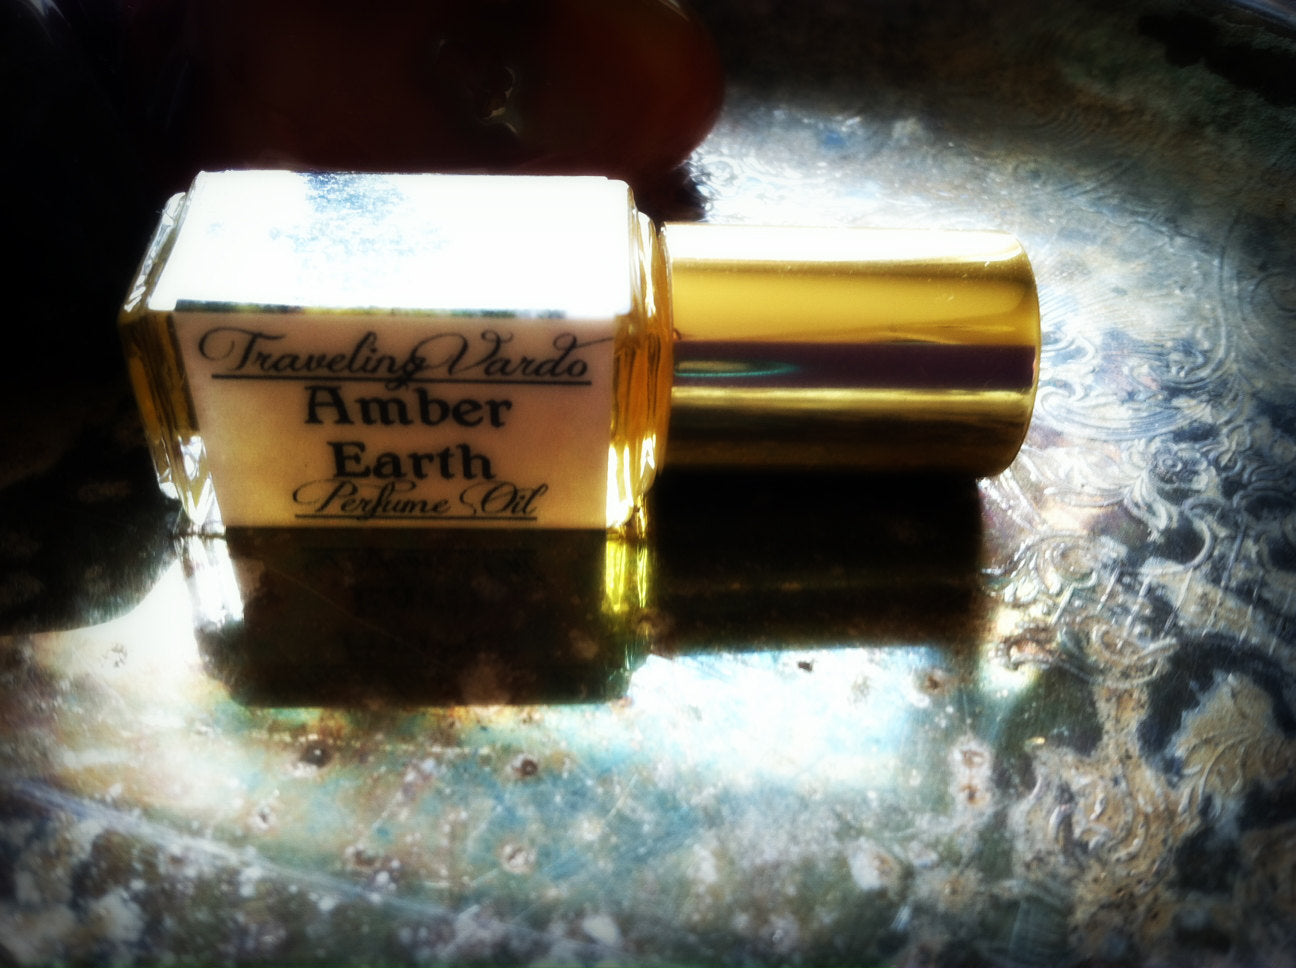 AMBER EARTH PERFUME OIL ~ All Natural ~ Amber Sandalwood Perfume Frankincense Myrrh Vetiver